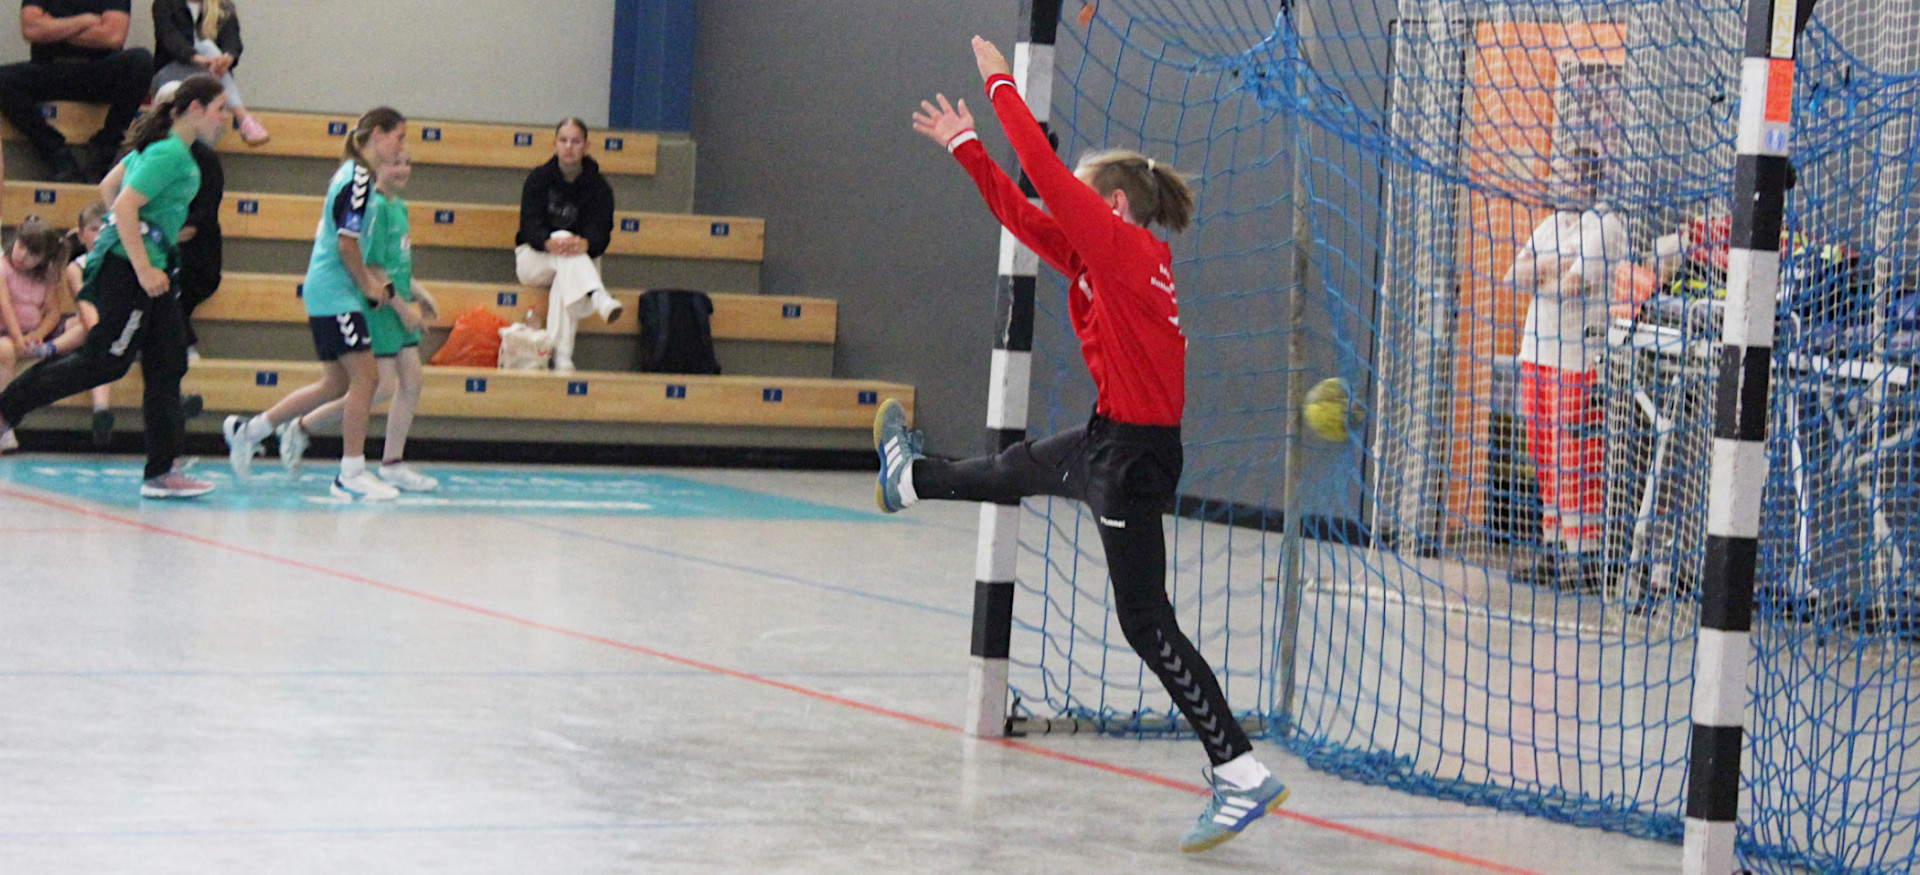 Handball ©LSB MV